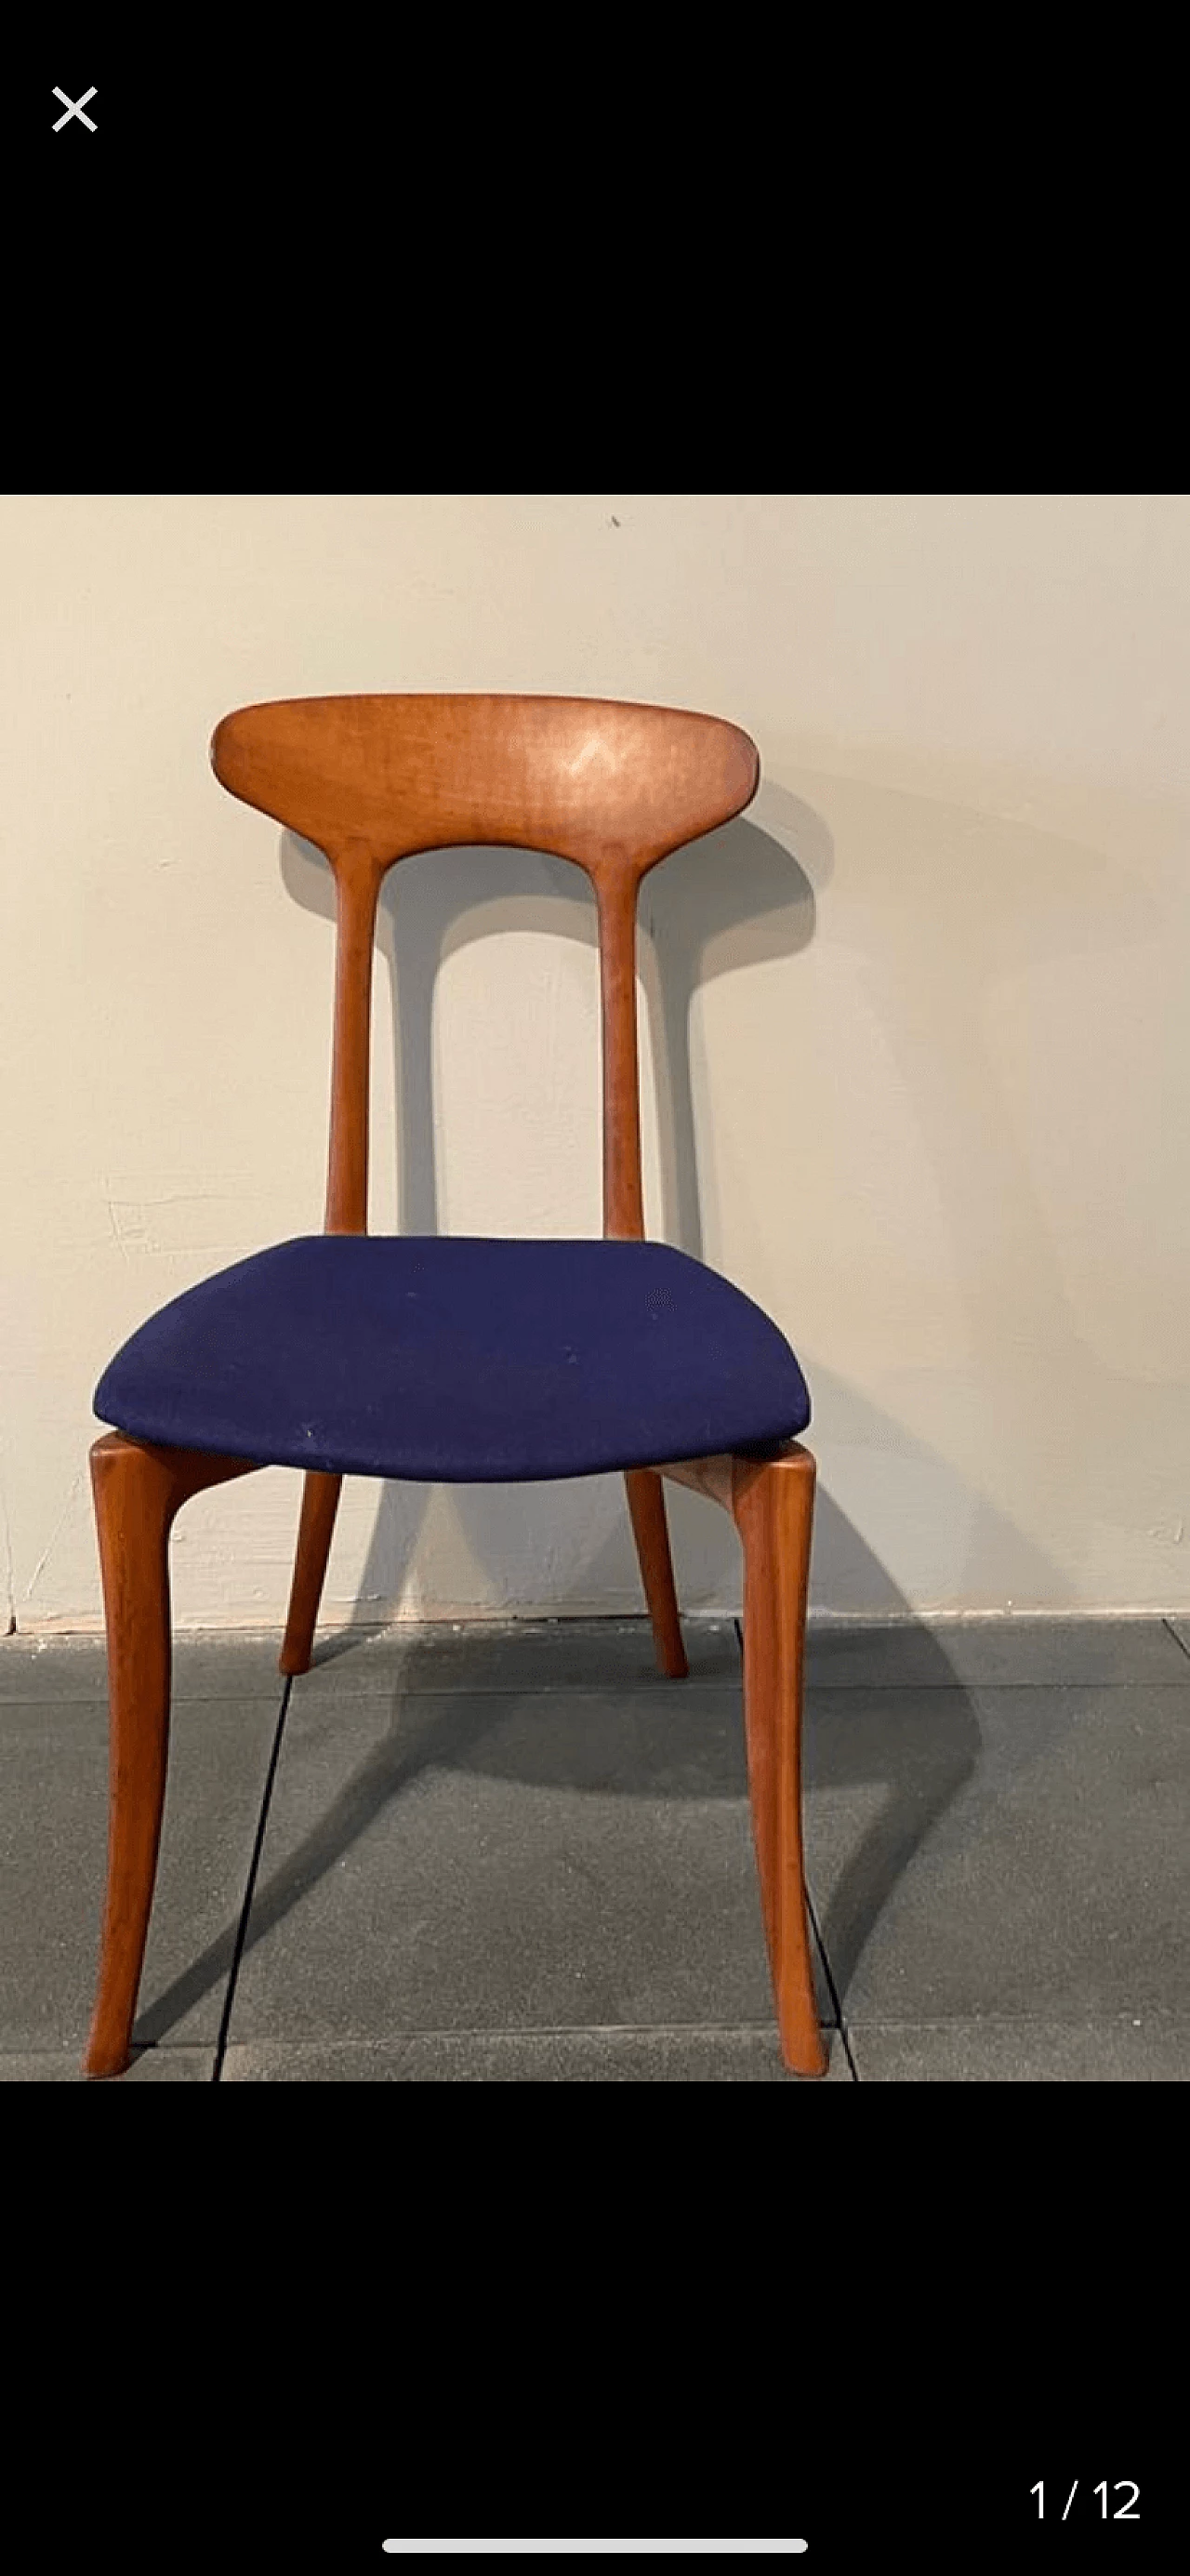 Mabel chair by Roberto Lazzeroni for Collezioni Ceccotti 1